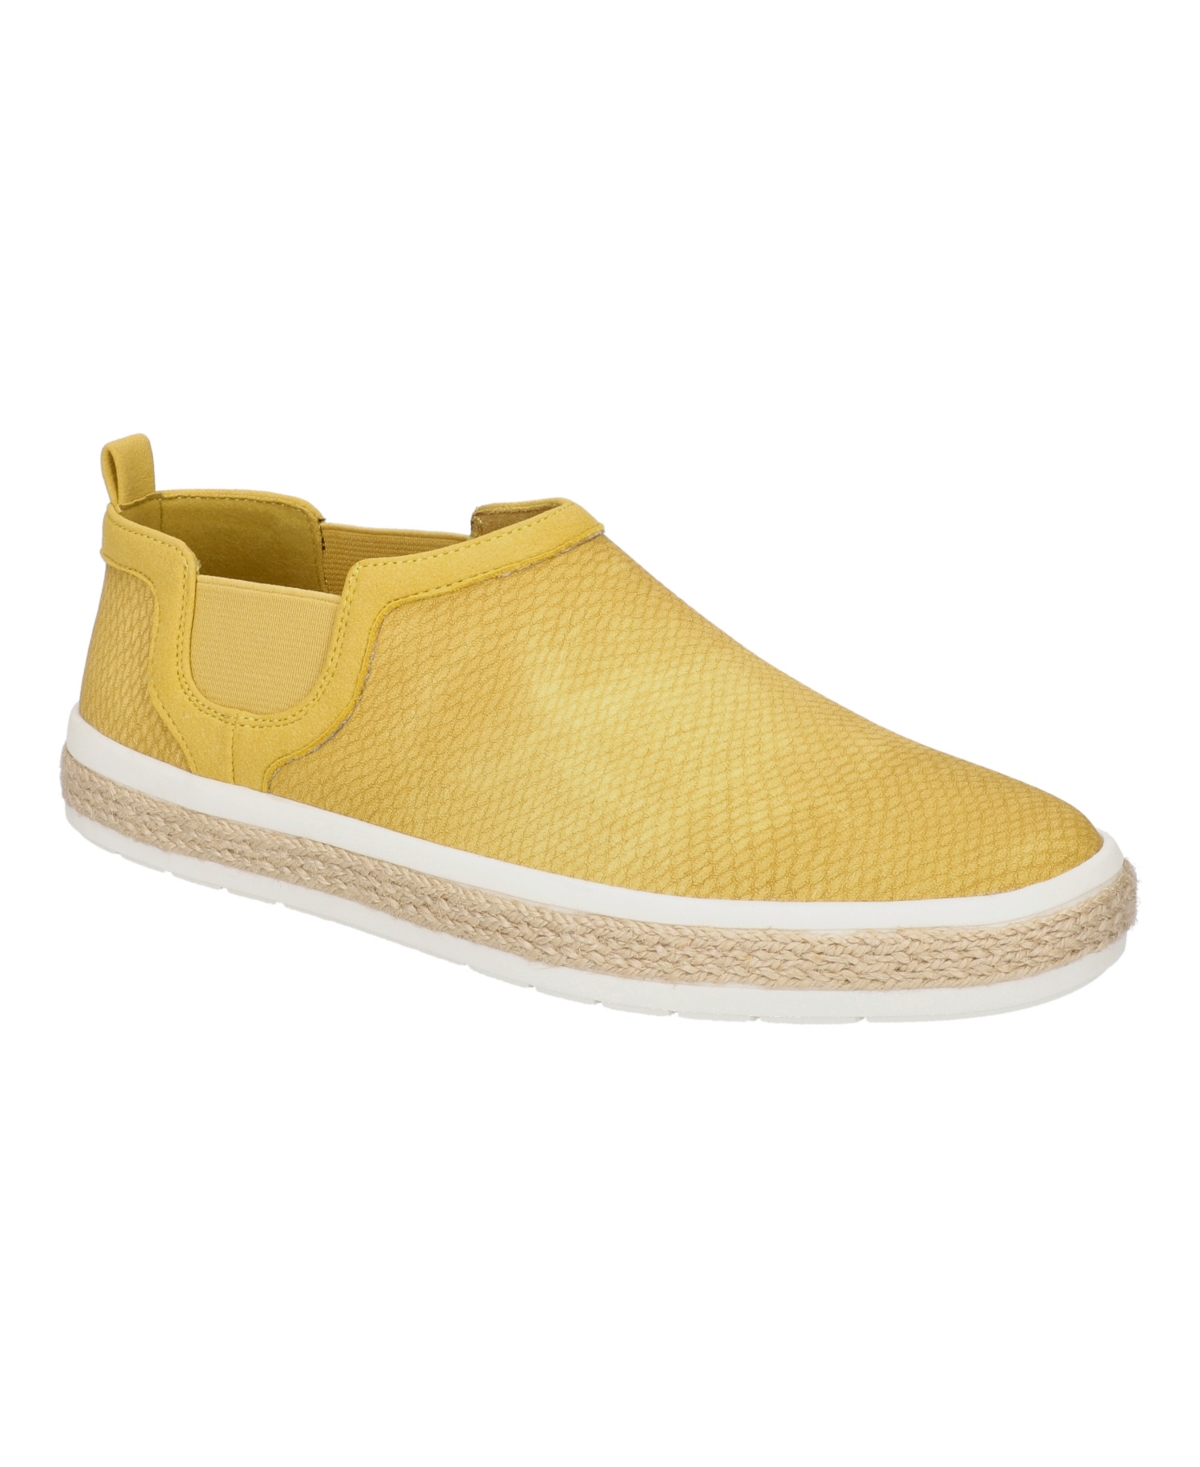 Women's Wrenley Slip-On Shoes - Yellow Snake Embossed